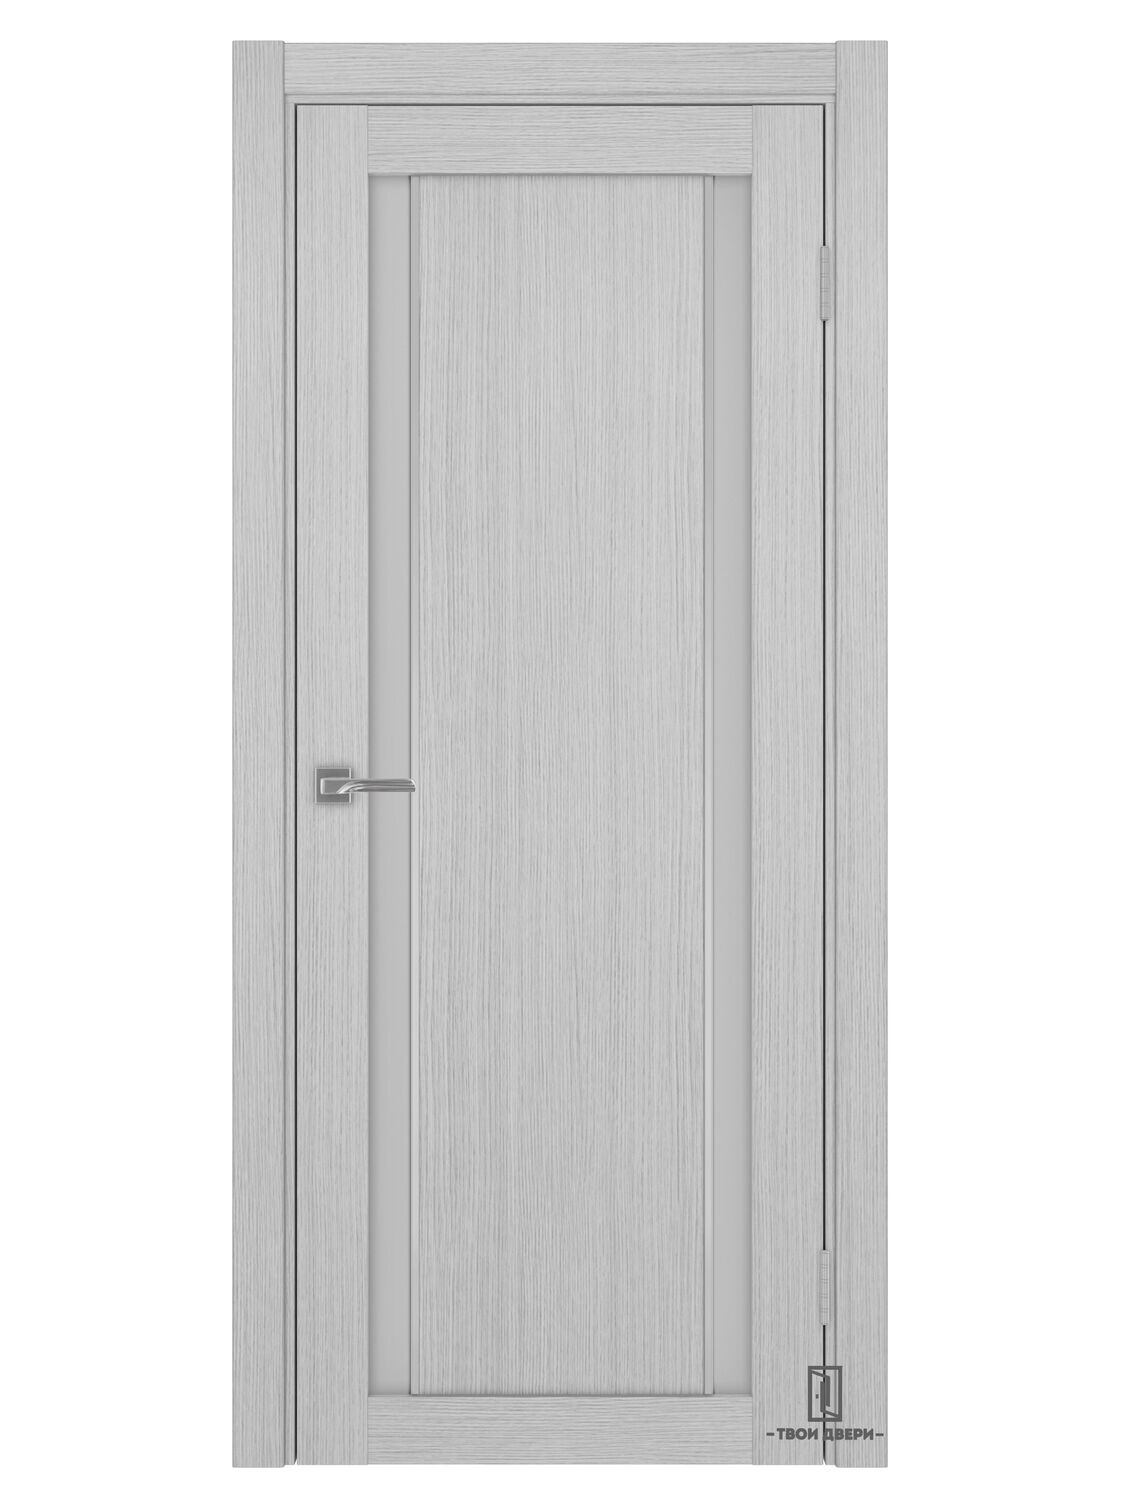 Дверь межкомнатная АПС 522.212 молдинг, дуб серый